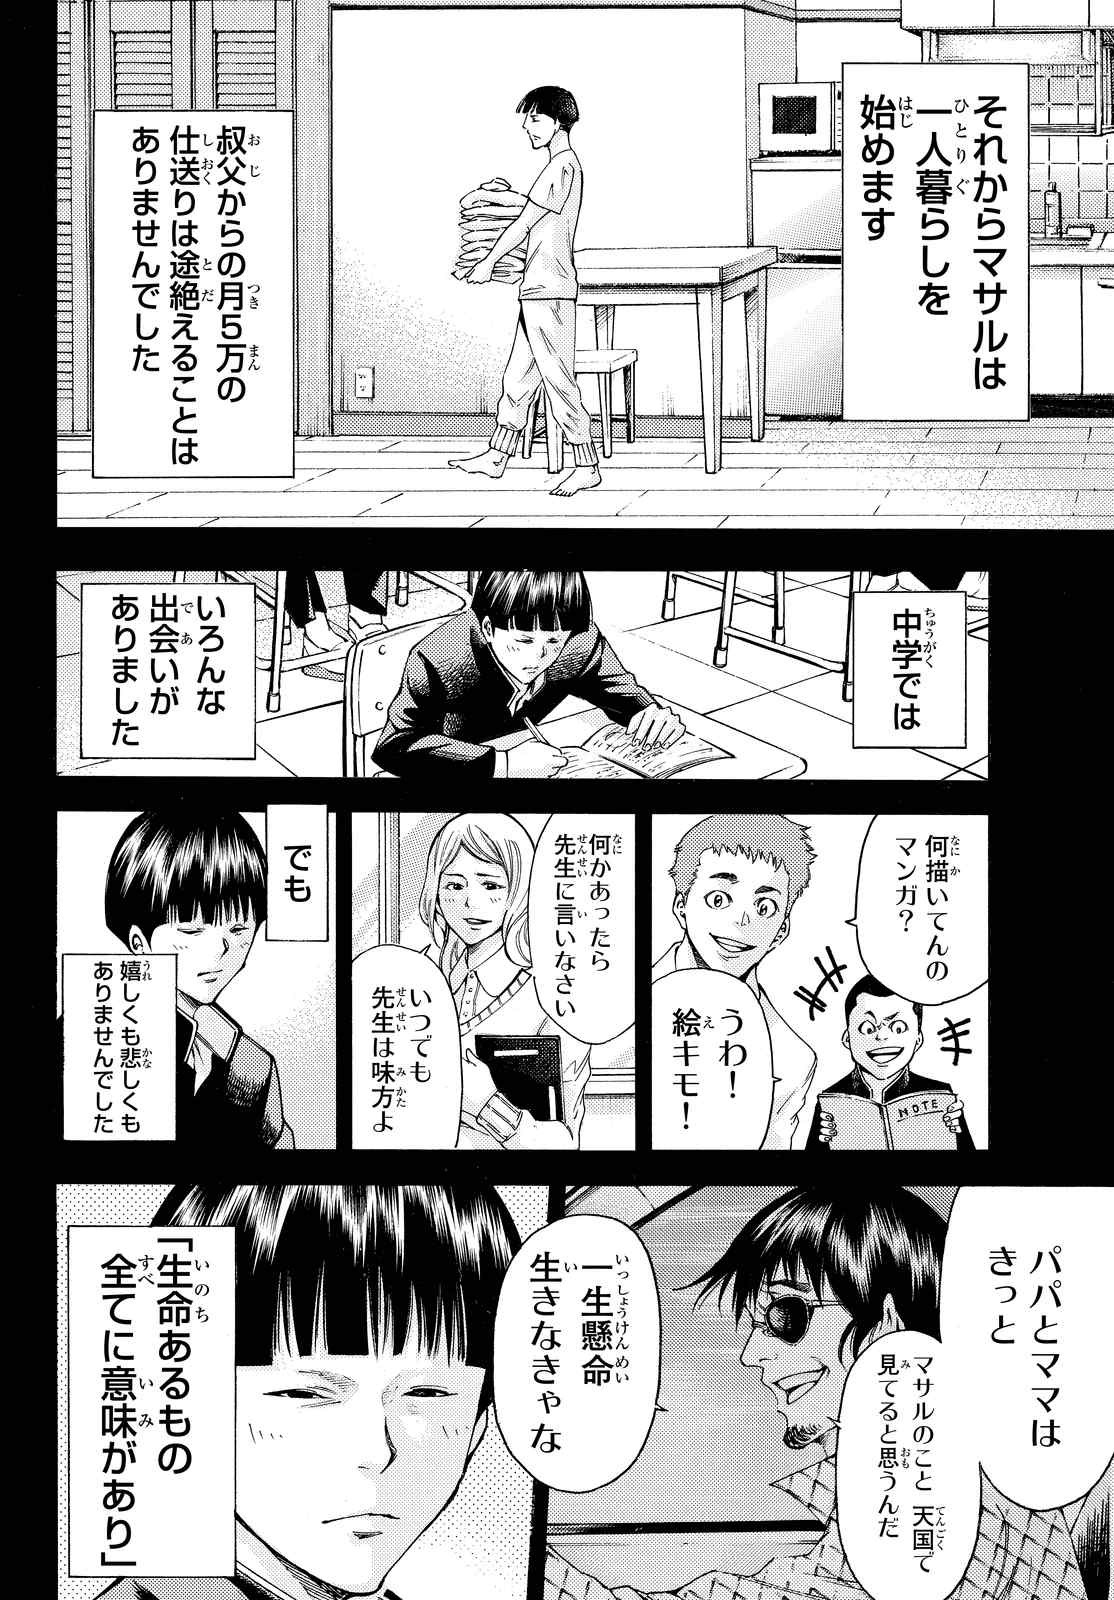 Kamisama no Ituori - Chapter 155 - Page 6